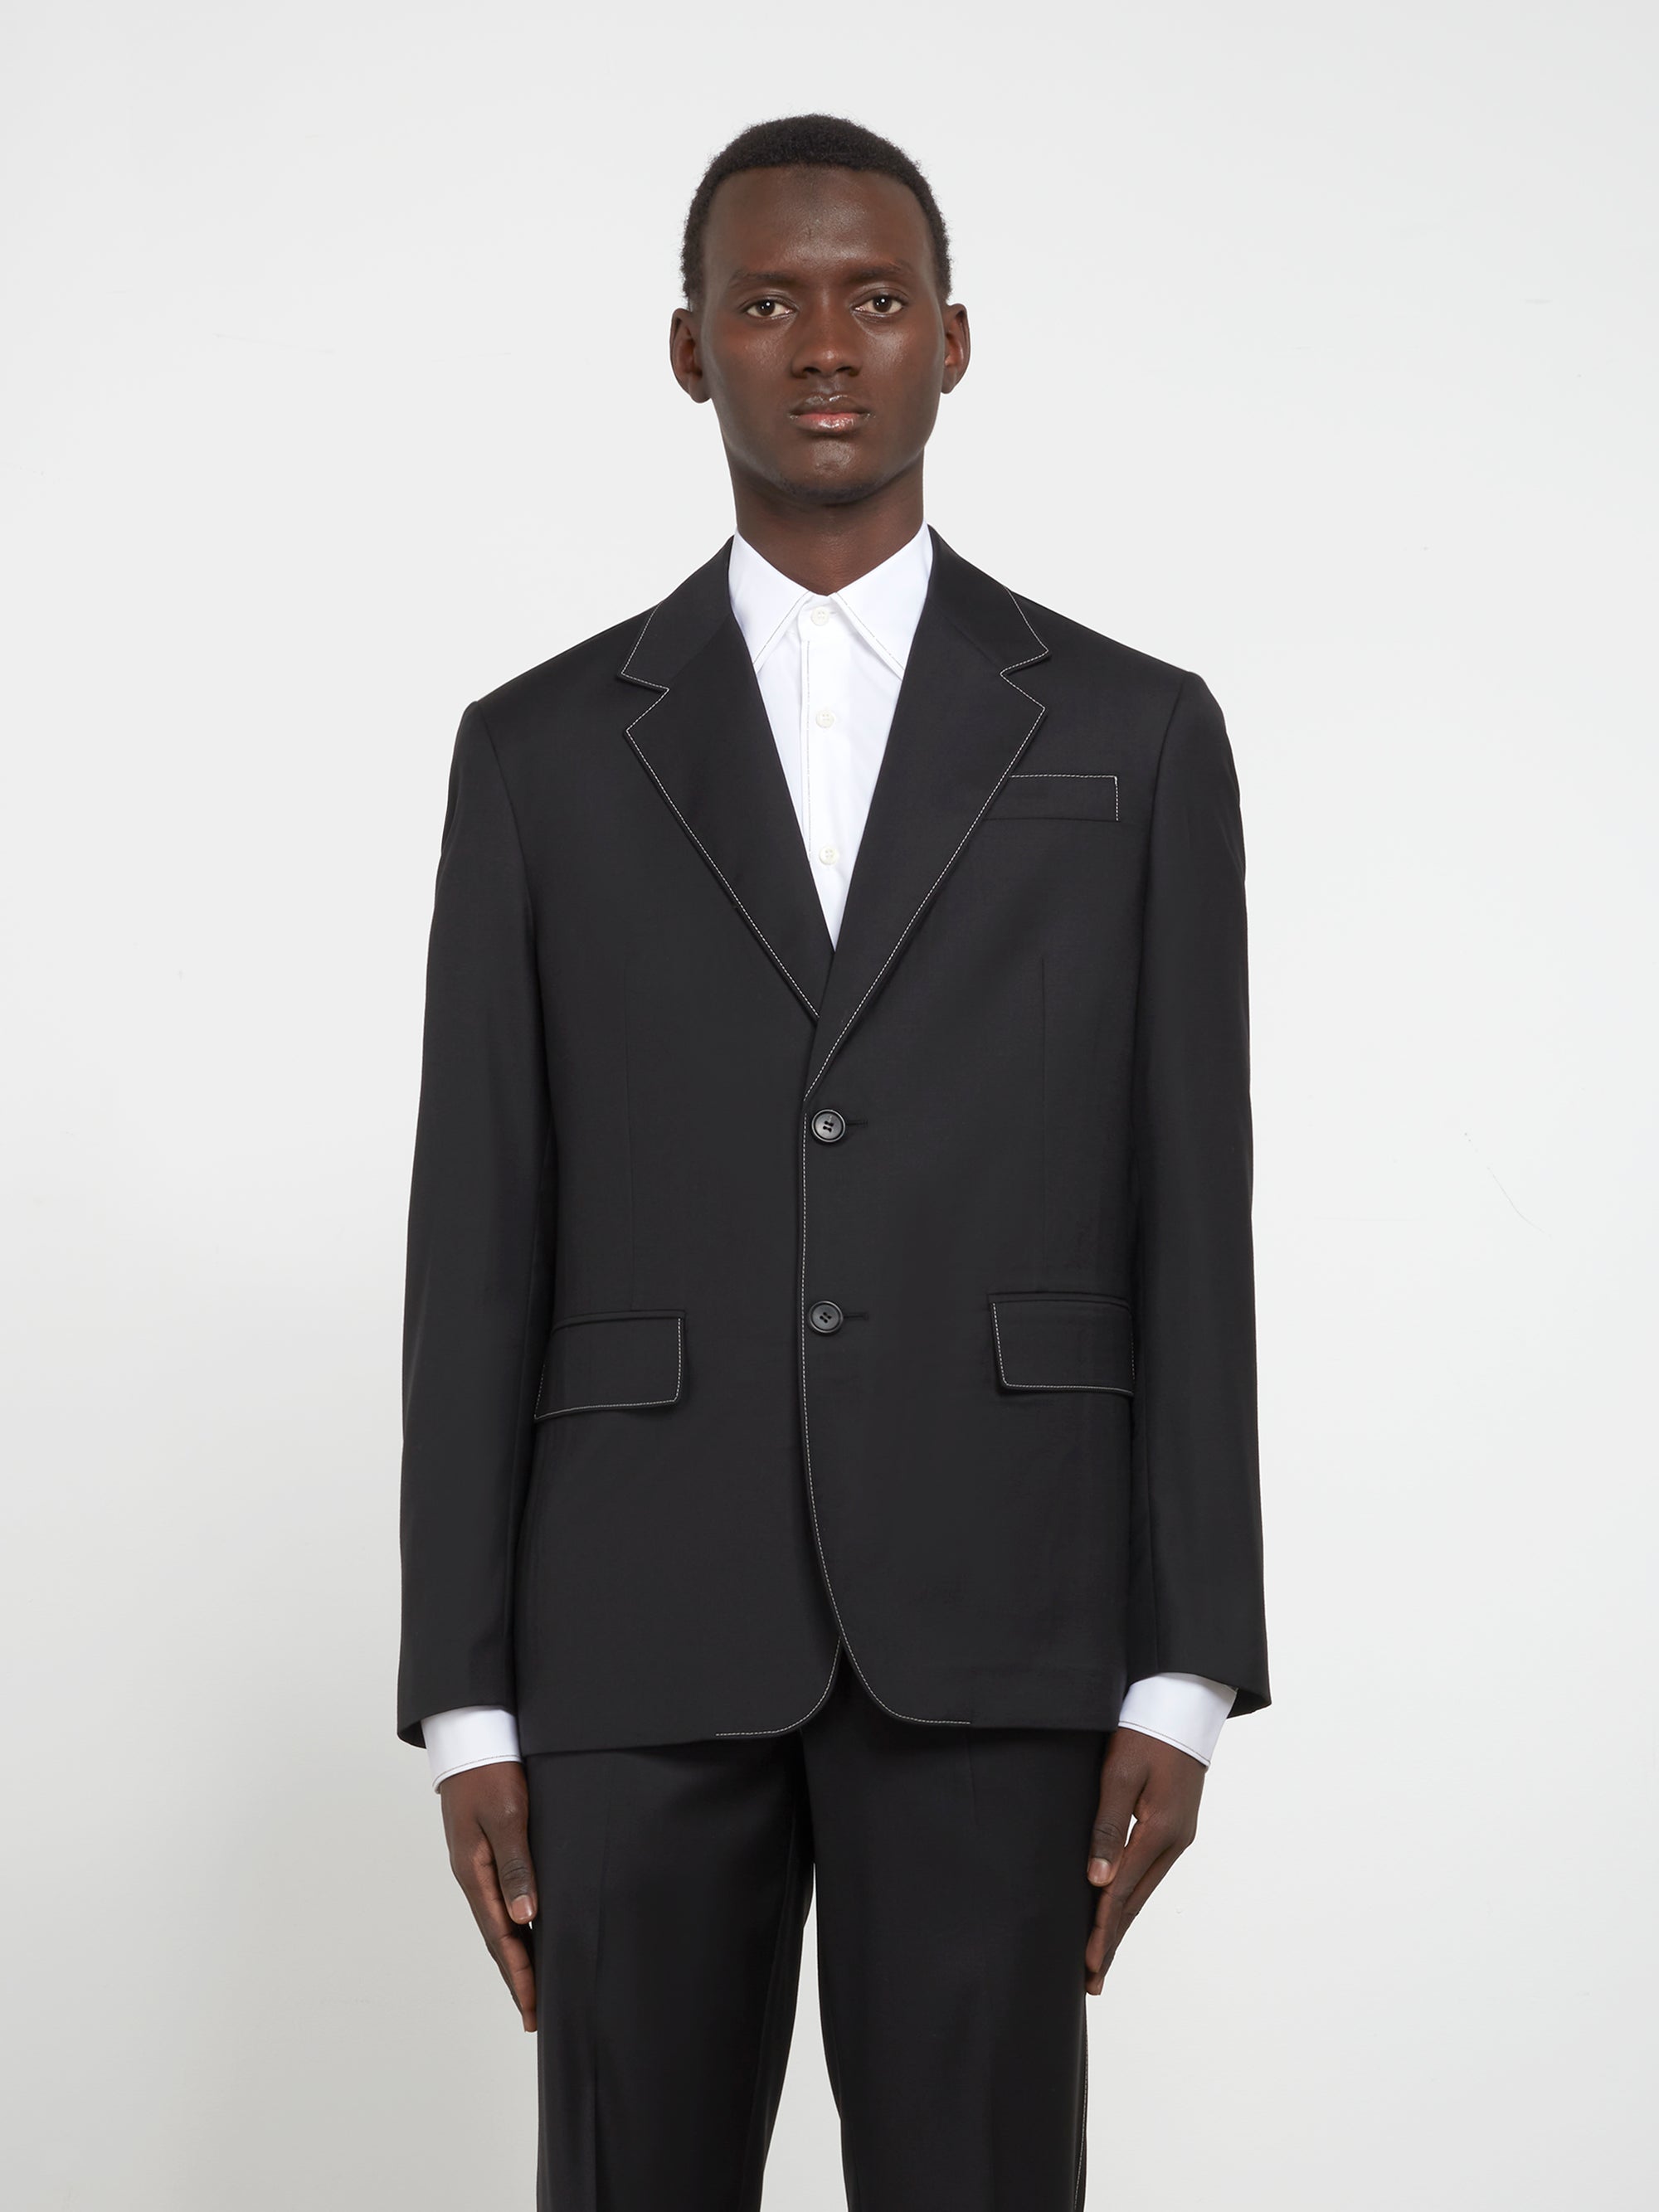 Prada - Men’s Single-Breasted Wool Jacket - (Black) view 1